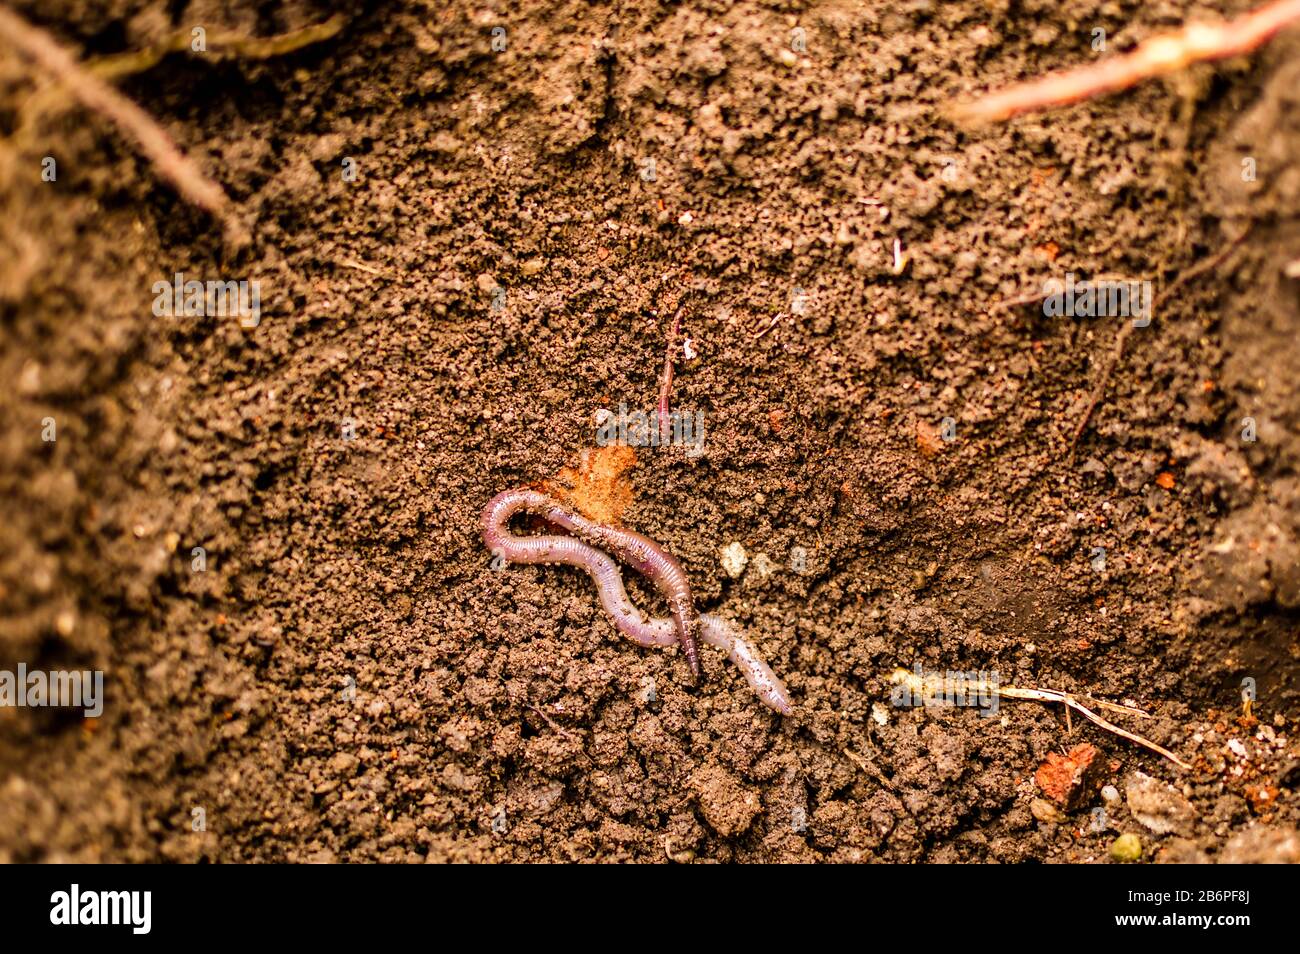 Un ver commence à enfouer dans le sol, un gros plan d'un ver de terre dans des conditions naturelles Banque D'Images